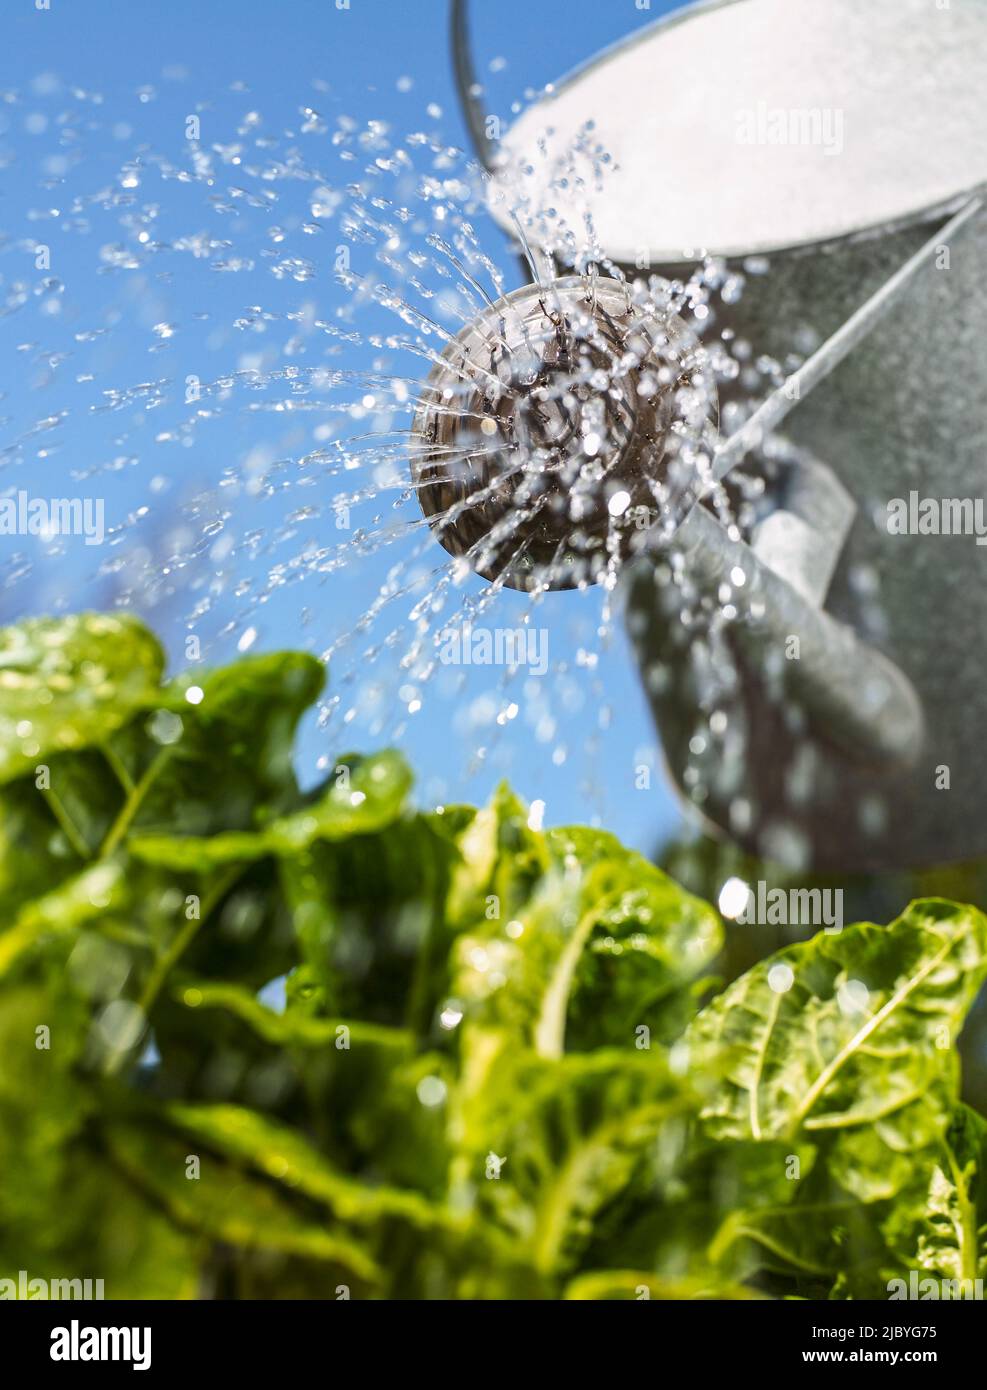 Gießkannen mit Wasser, das auf grünes Blattgemüse herabregnet Stockfoto